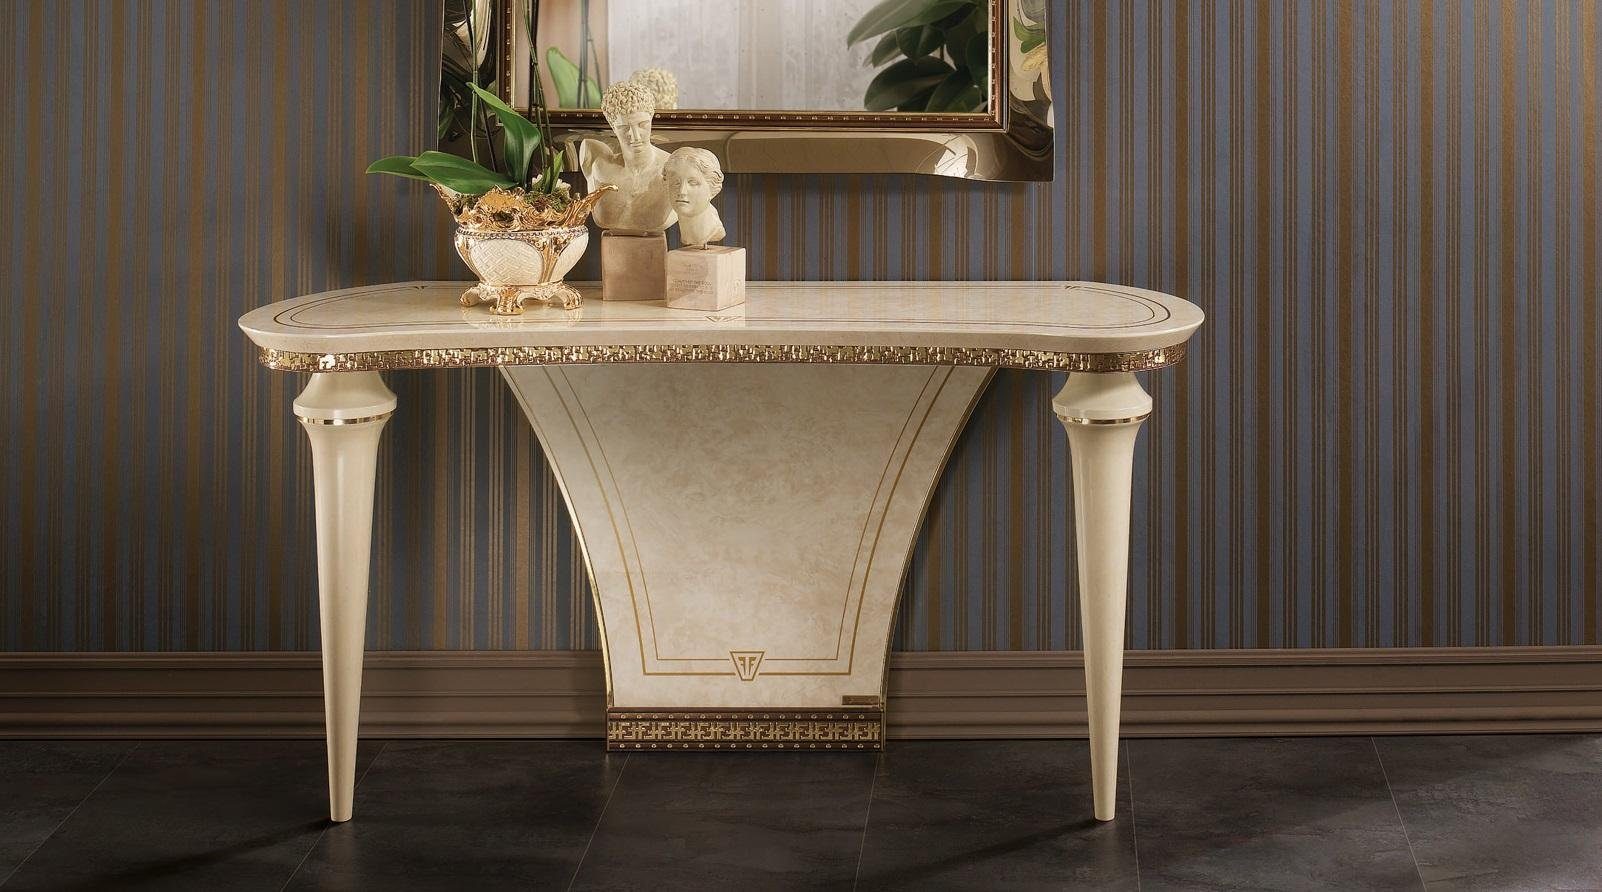 JVmoebel Konsolentisch Italienische Möbel Beistelltisch Tisch Konsole Konsolentisch Wohnzimmertisch